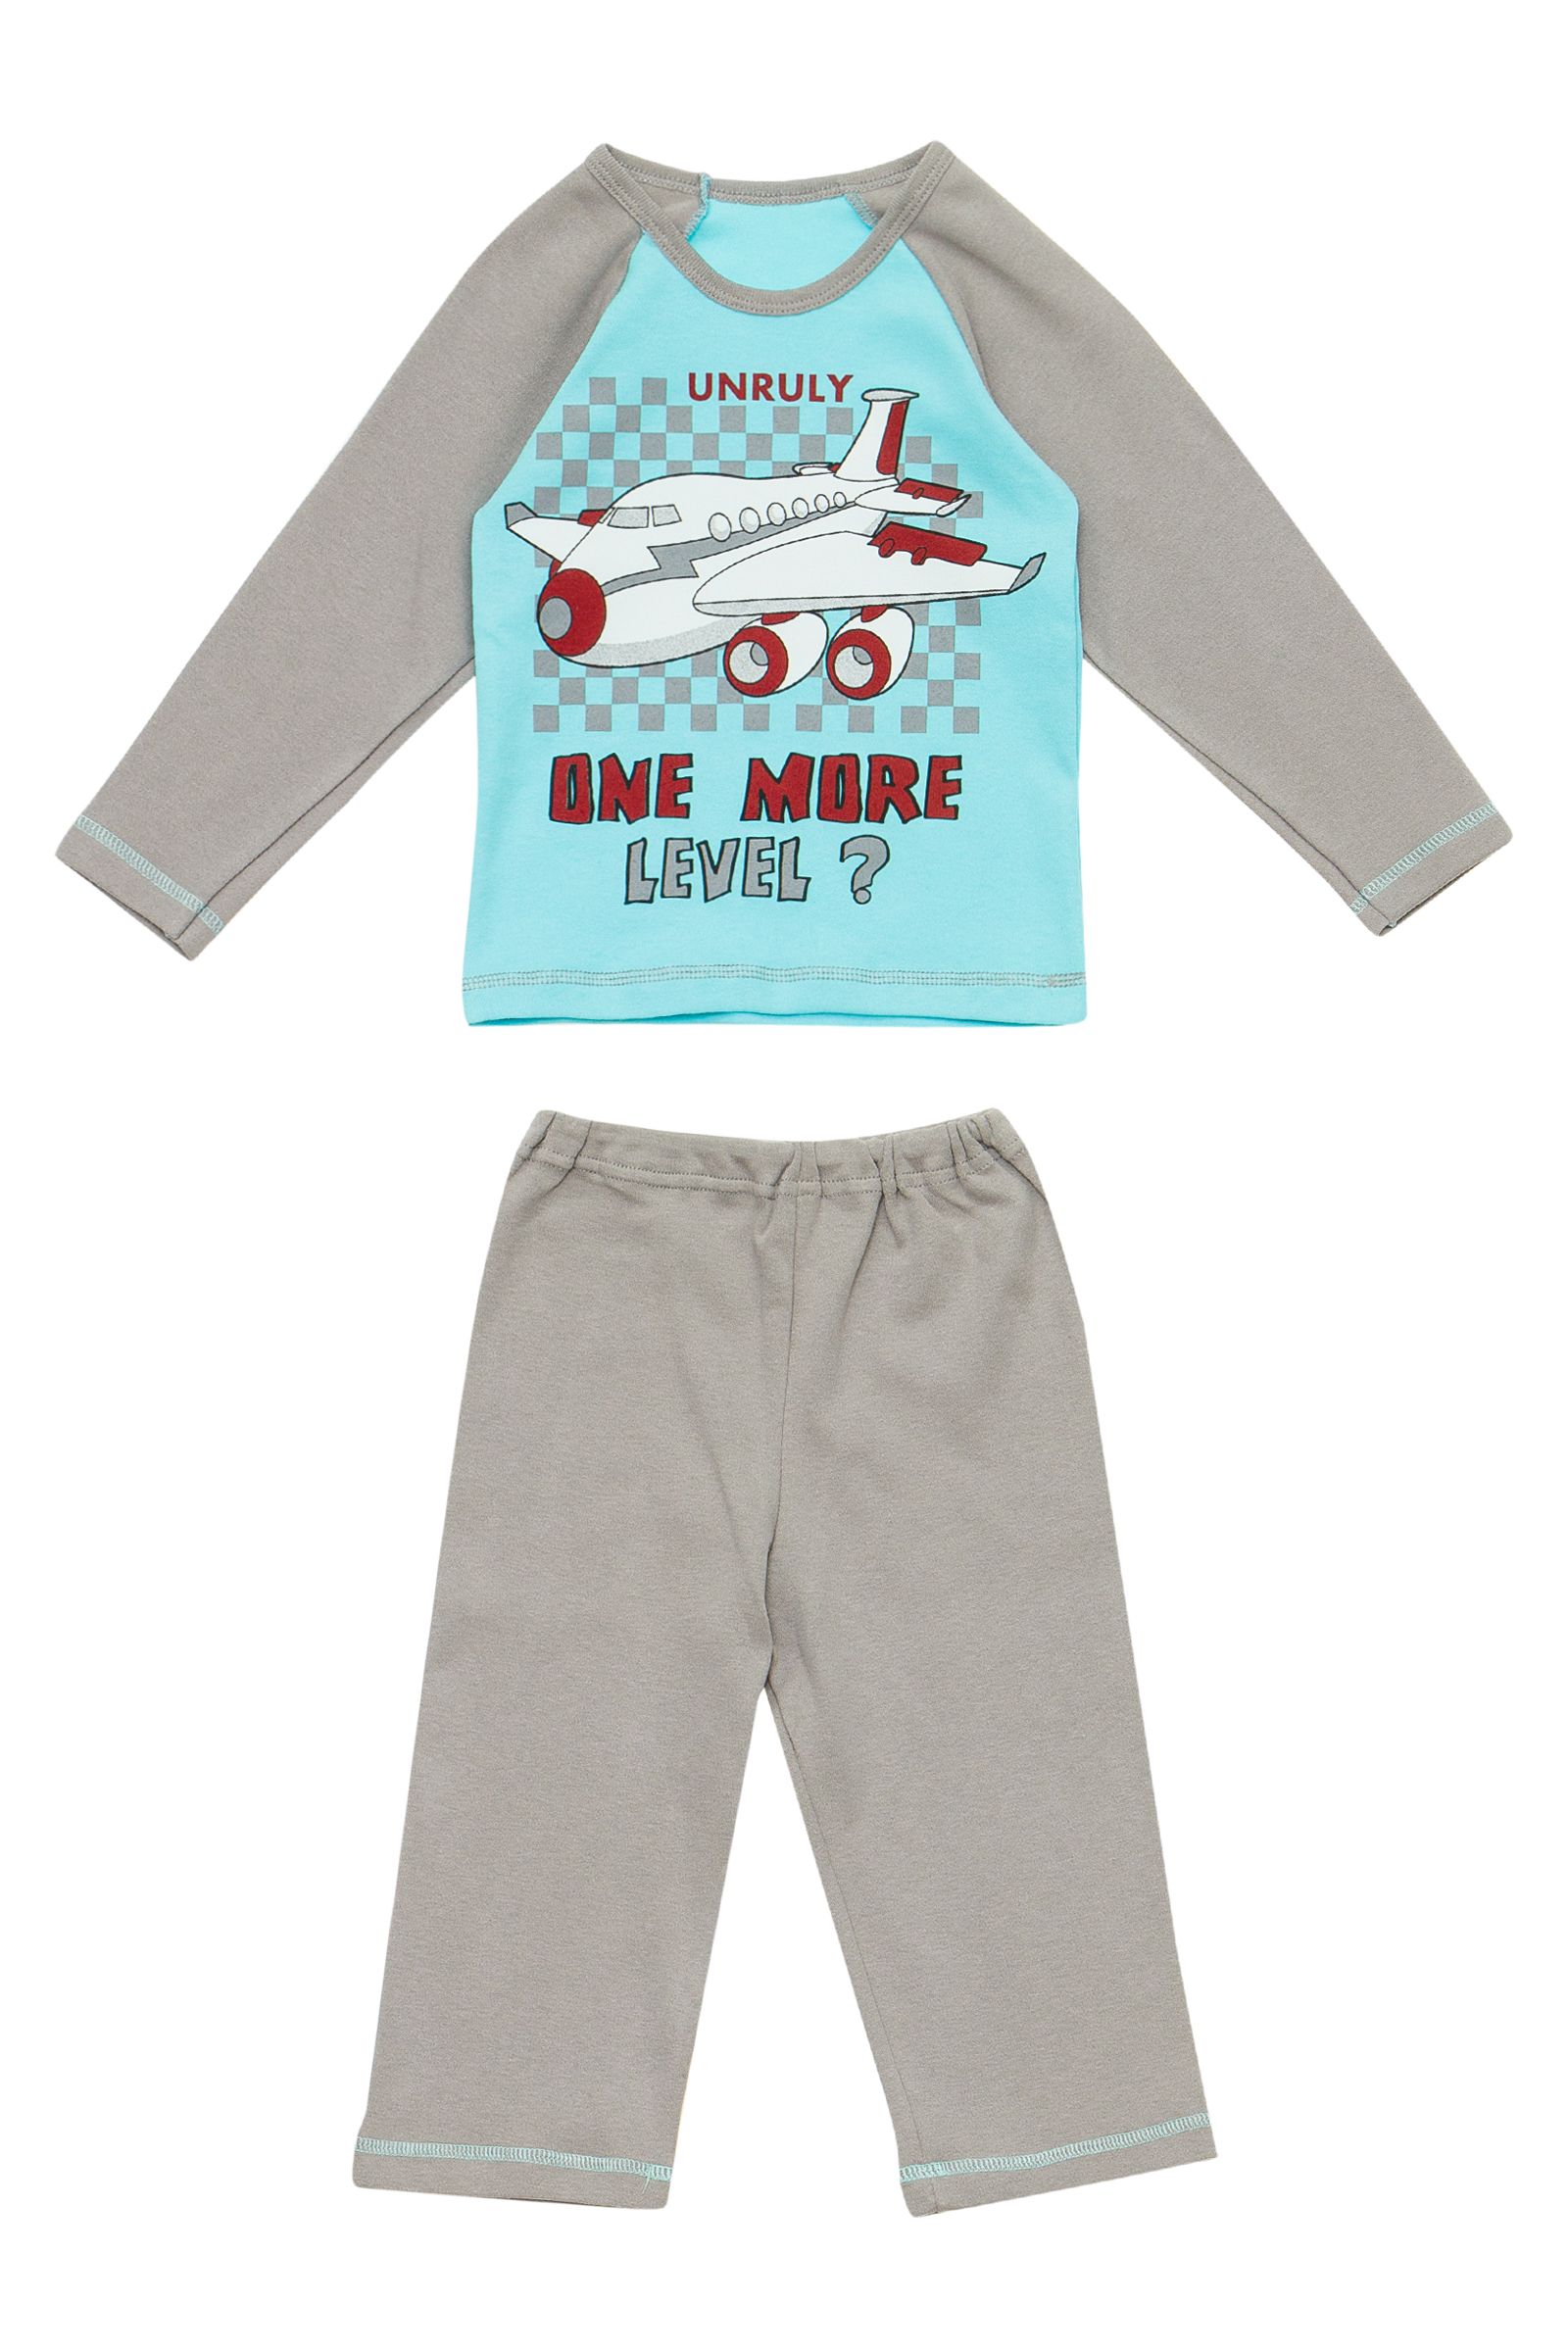 Пижама-ПЖ01-1236 оптом от производителя детской одежды 'Алёна'